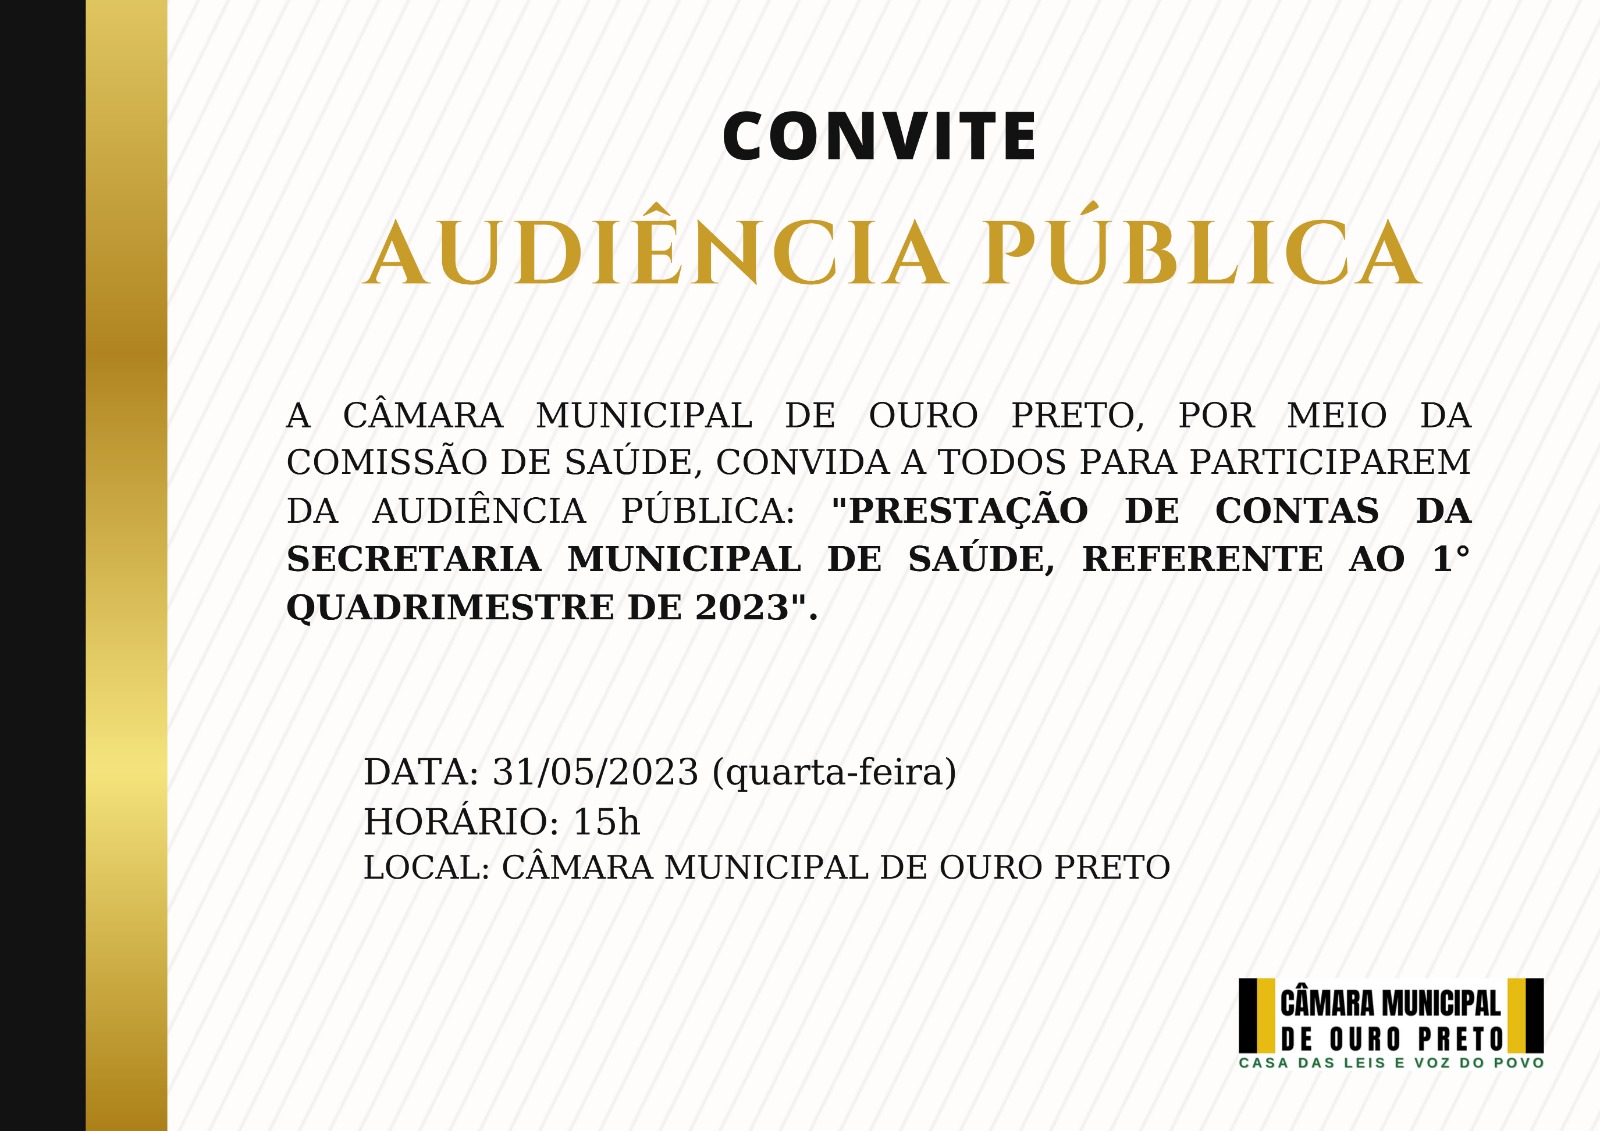 Câmara Municipal de Ouro Preto - Audiência Pública: Prestação de Contas da Secretaria Municipal de Saúde